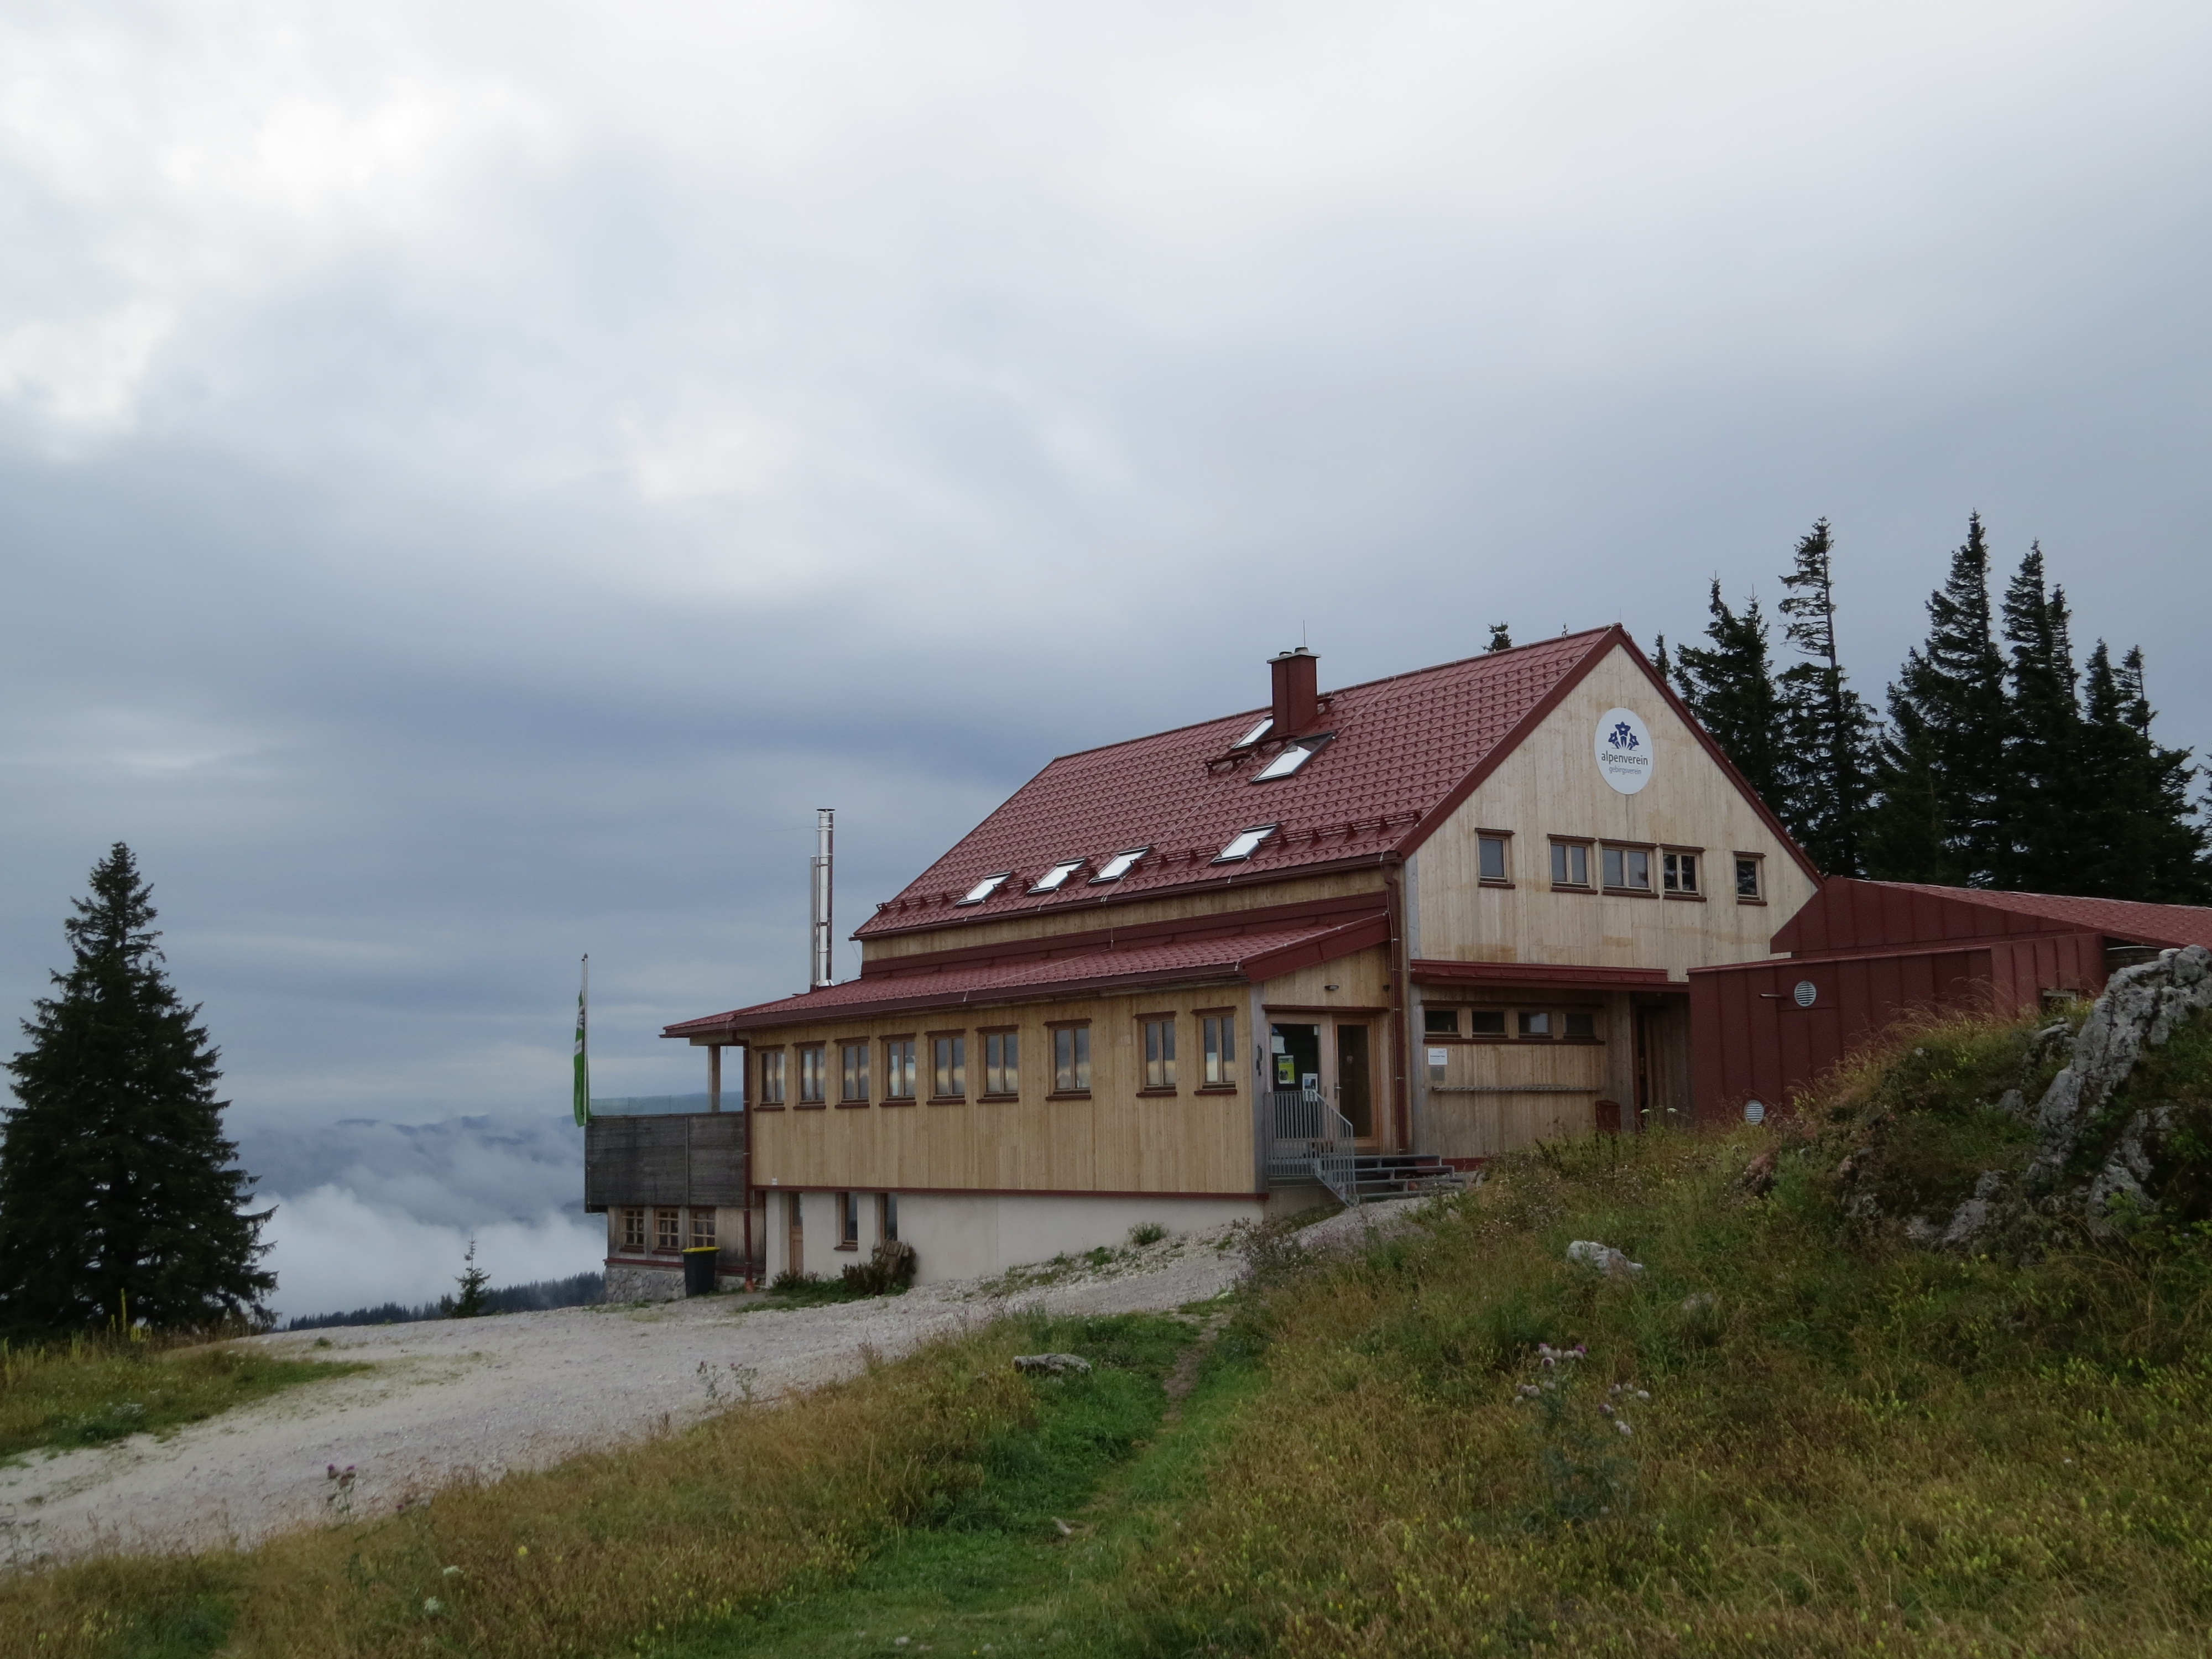 2018-08-11 (134) Annaberger Haus at Tirolerkogel, Annaberg, Austria